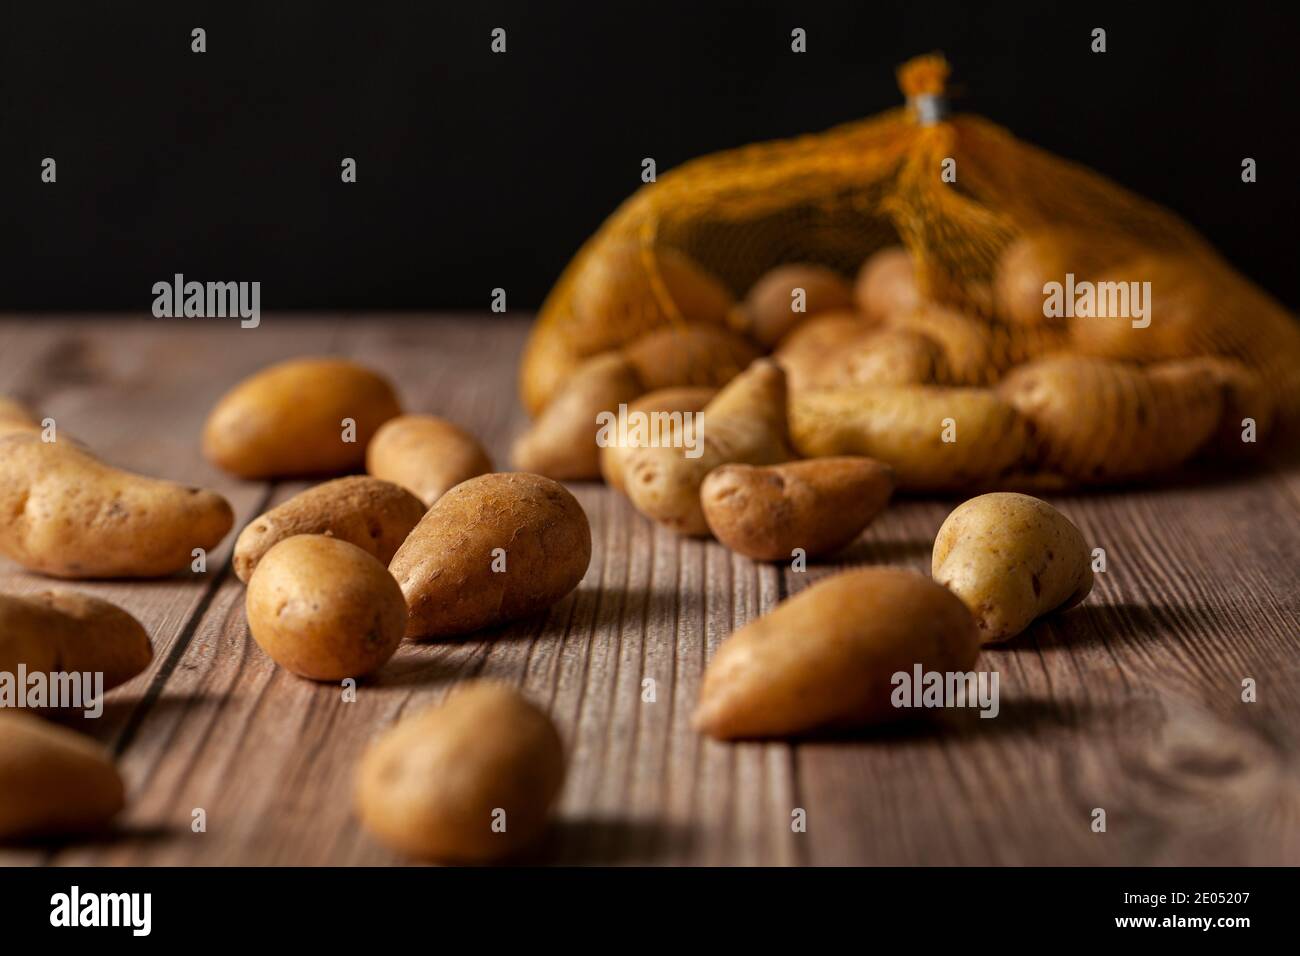 Faible profondeur de champ image sombre de petites pommes de terre ratte de forme irrégulière éparpillées sur la surface d'une table en bois d'un sac de filet à bout. Un Banque D'Images